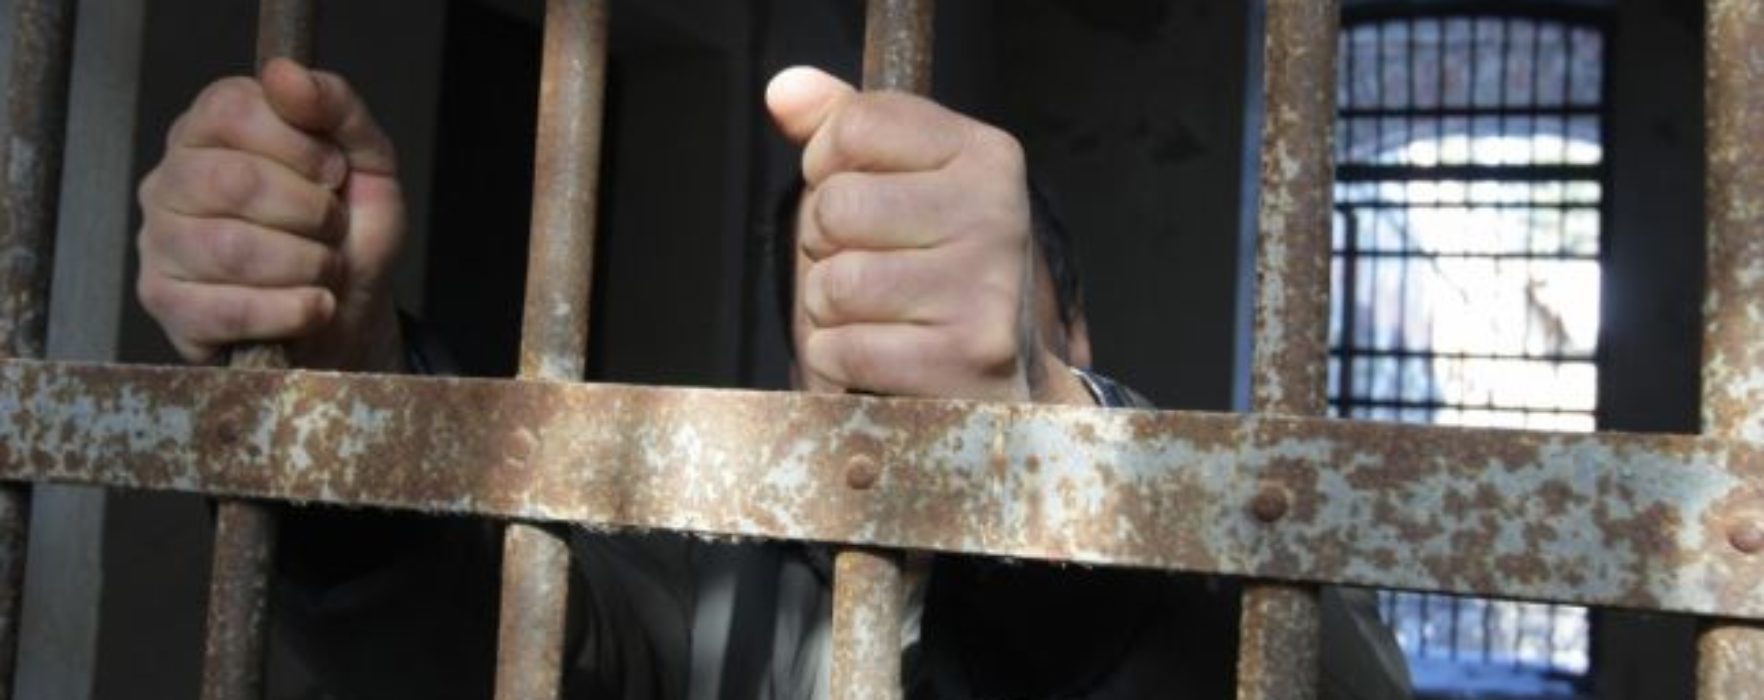 Dâmboviţa: Deţinutul evadat de la Penitenciarul Găeşti în urmă cu două săptămâni a fost prins